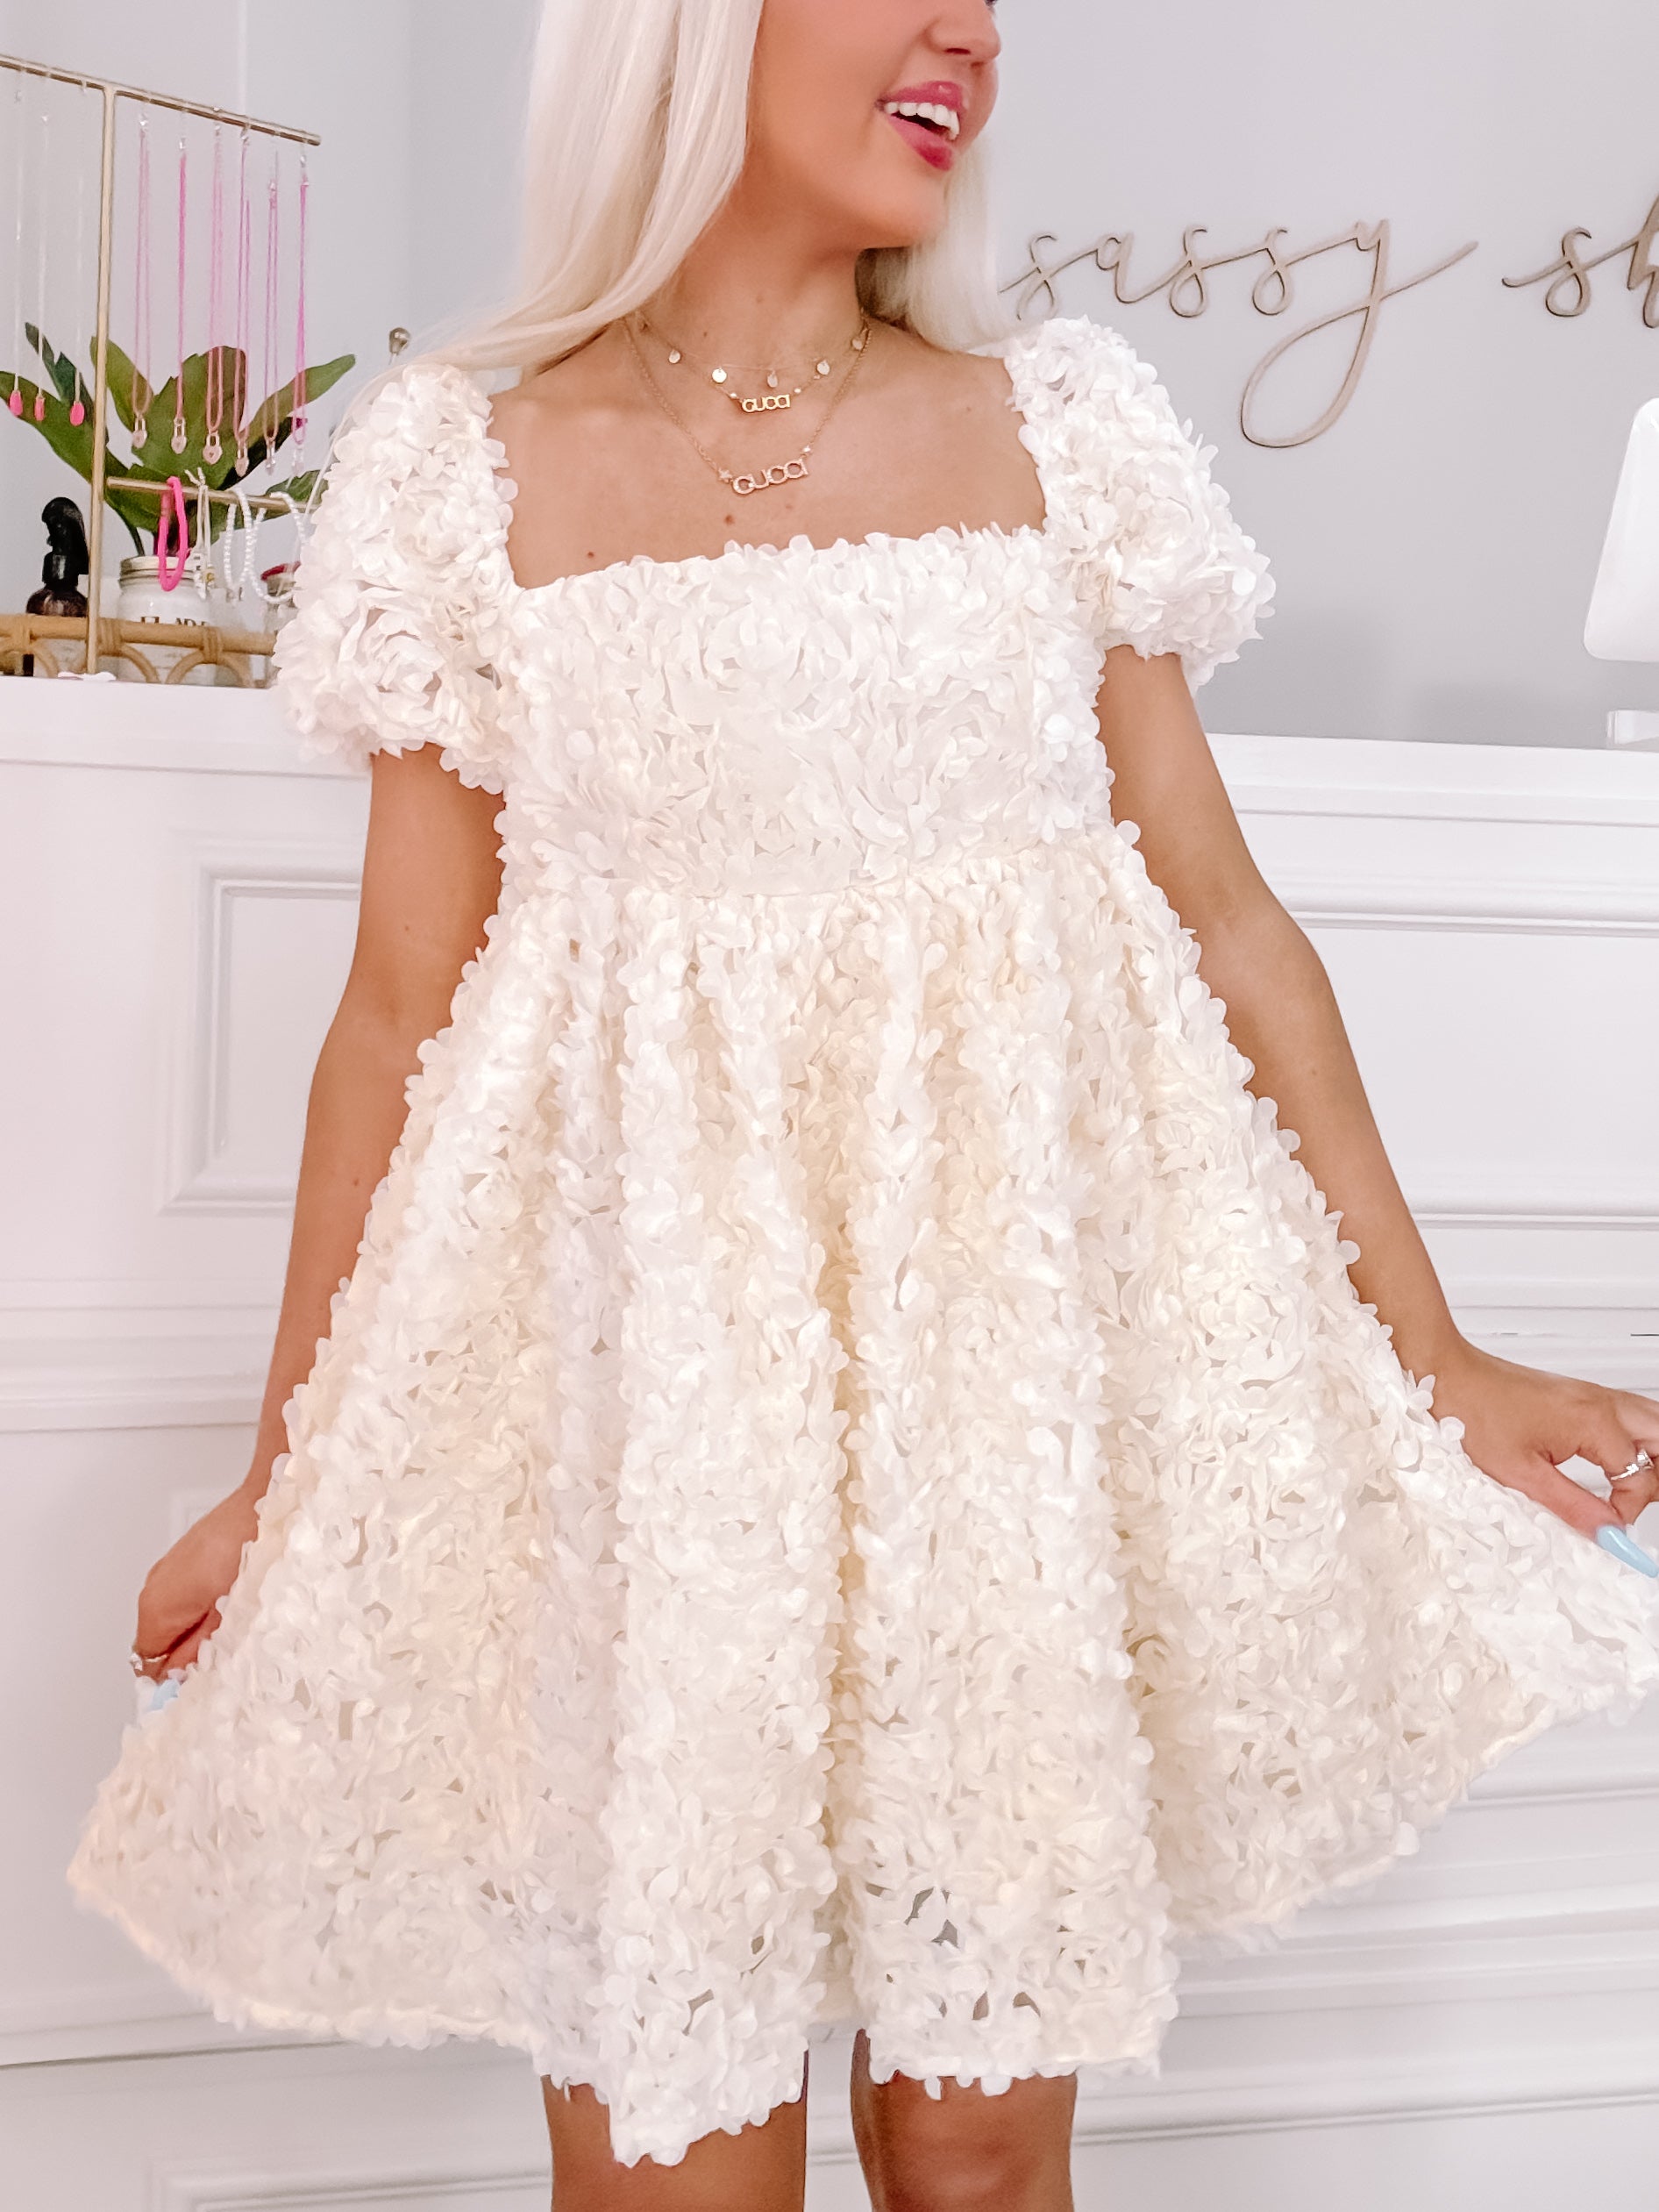 Flower Power Ivory Babydoll Dress | Sassy Shortcake | sassyshortcake.com